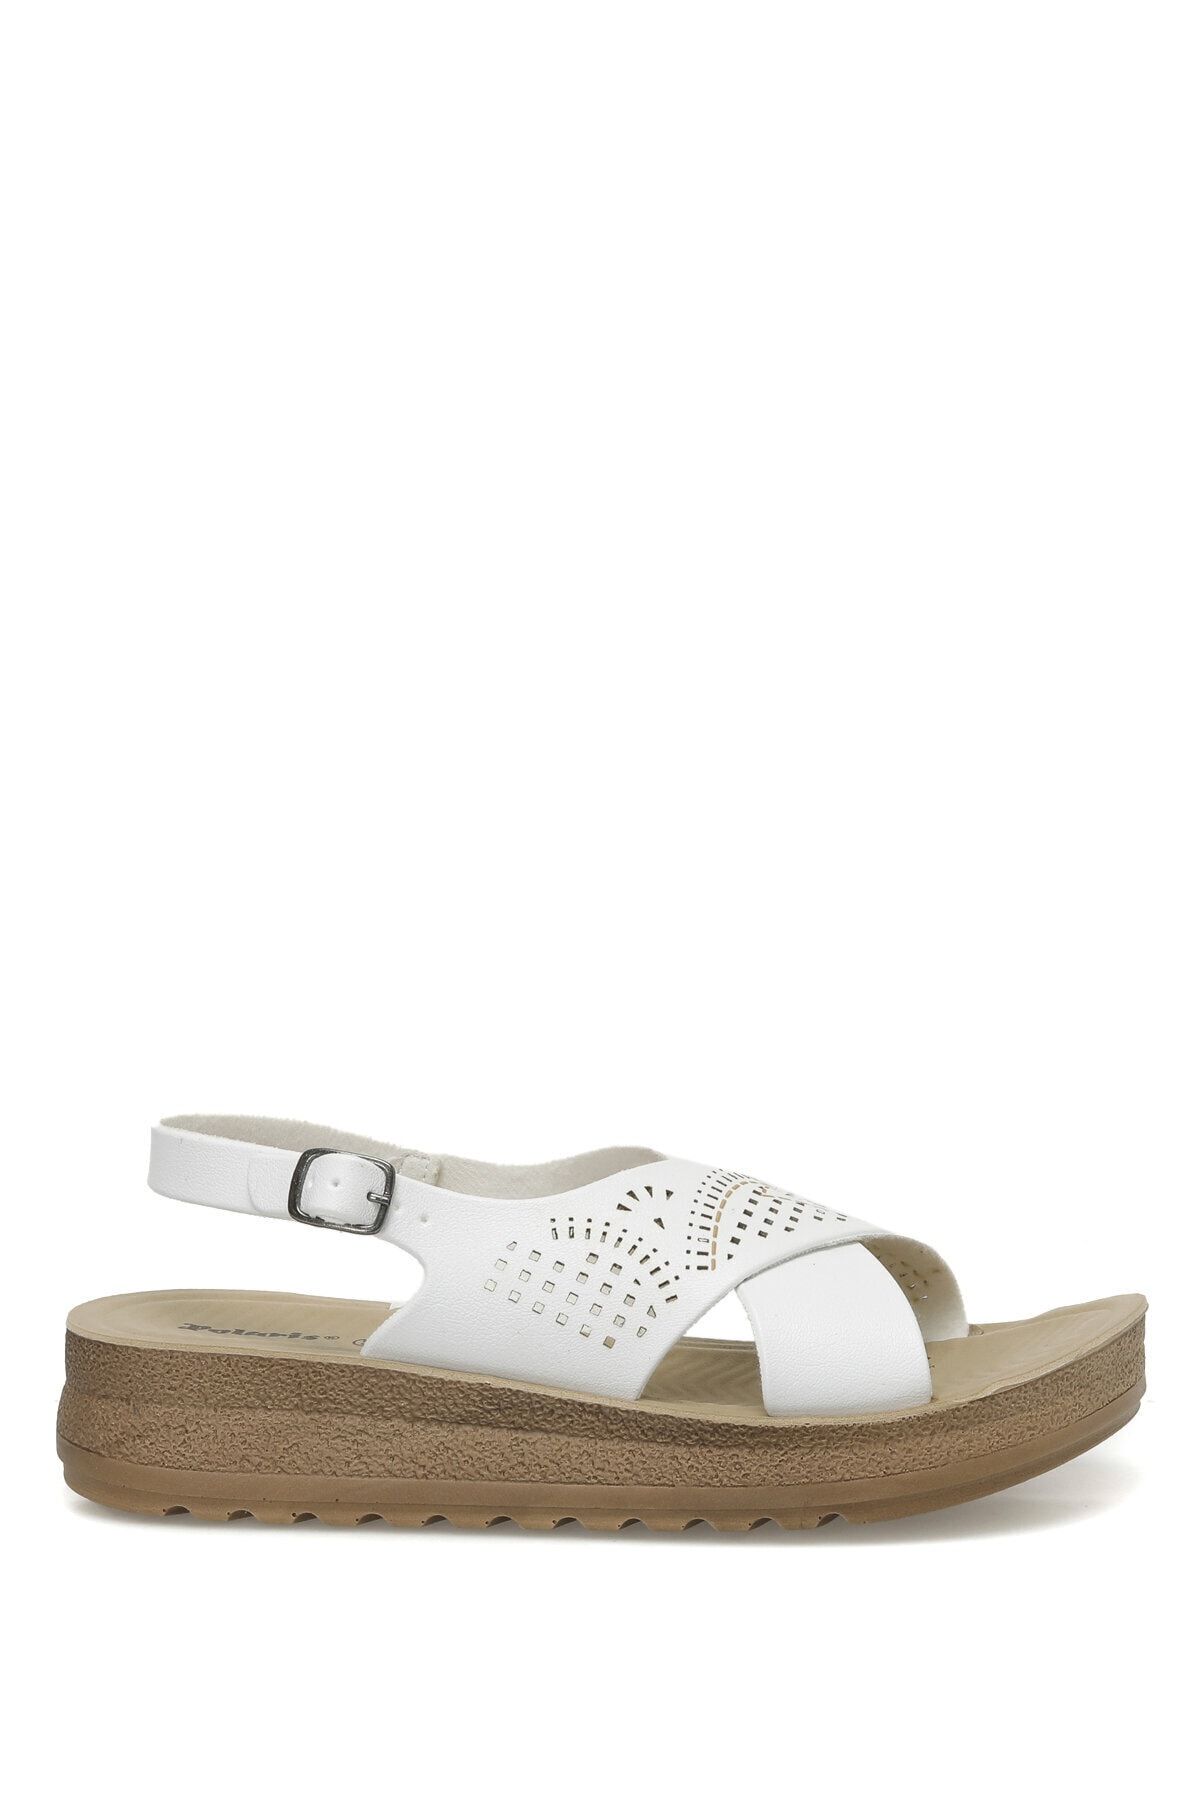 Polaris 164439.Z3FX Beyaz Kadın Comfort Sandalet